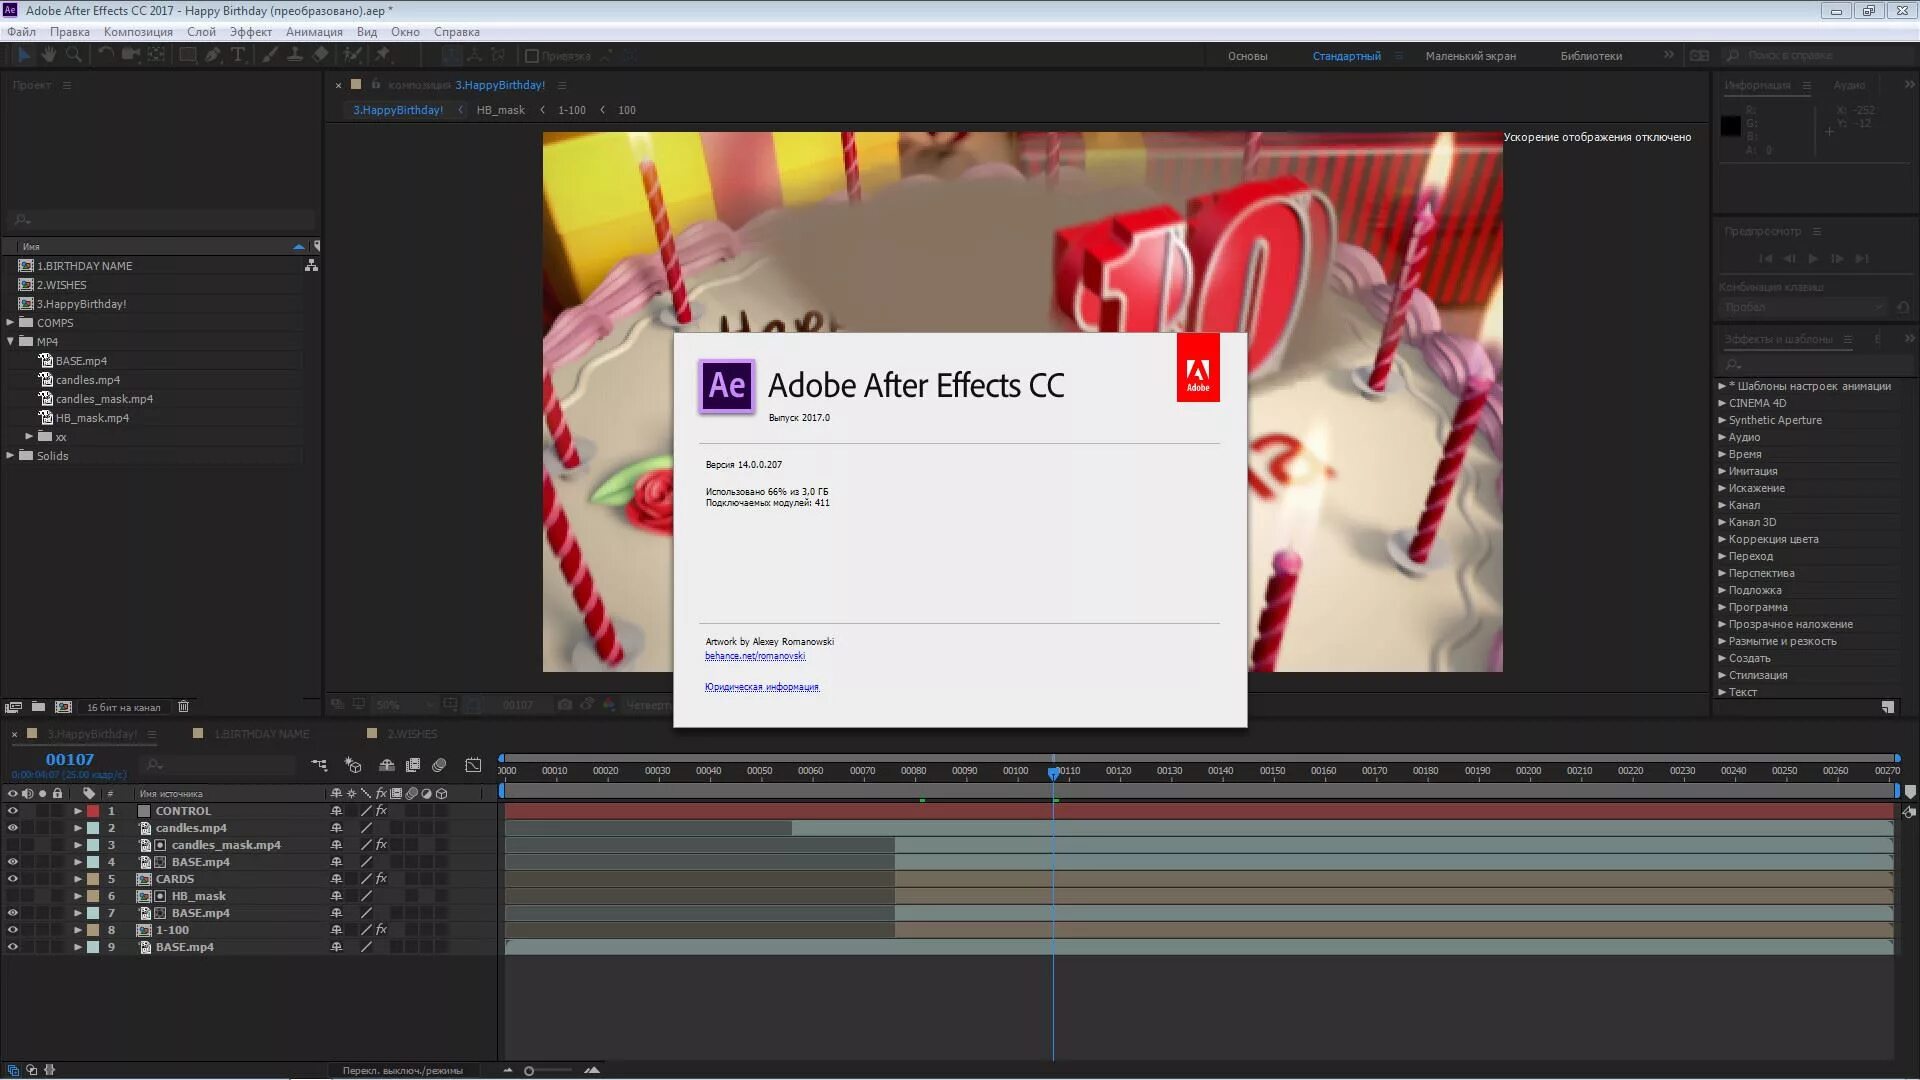 AE cc 2017. Adobe after Effects 2017. Adobe after Effects cc 2017. Adobe after Effects cc 2017.0 14.0.0.207.